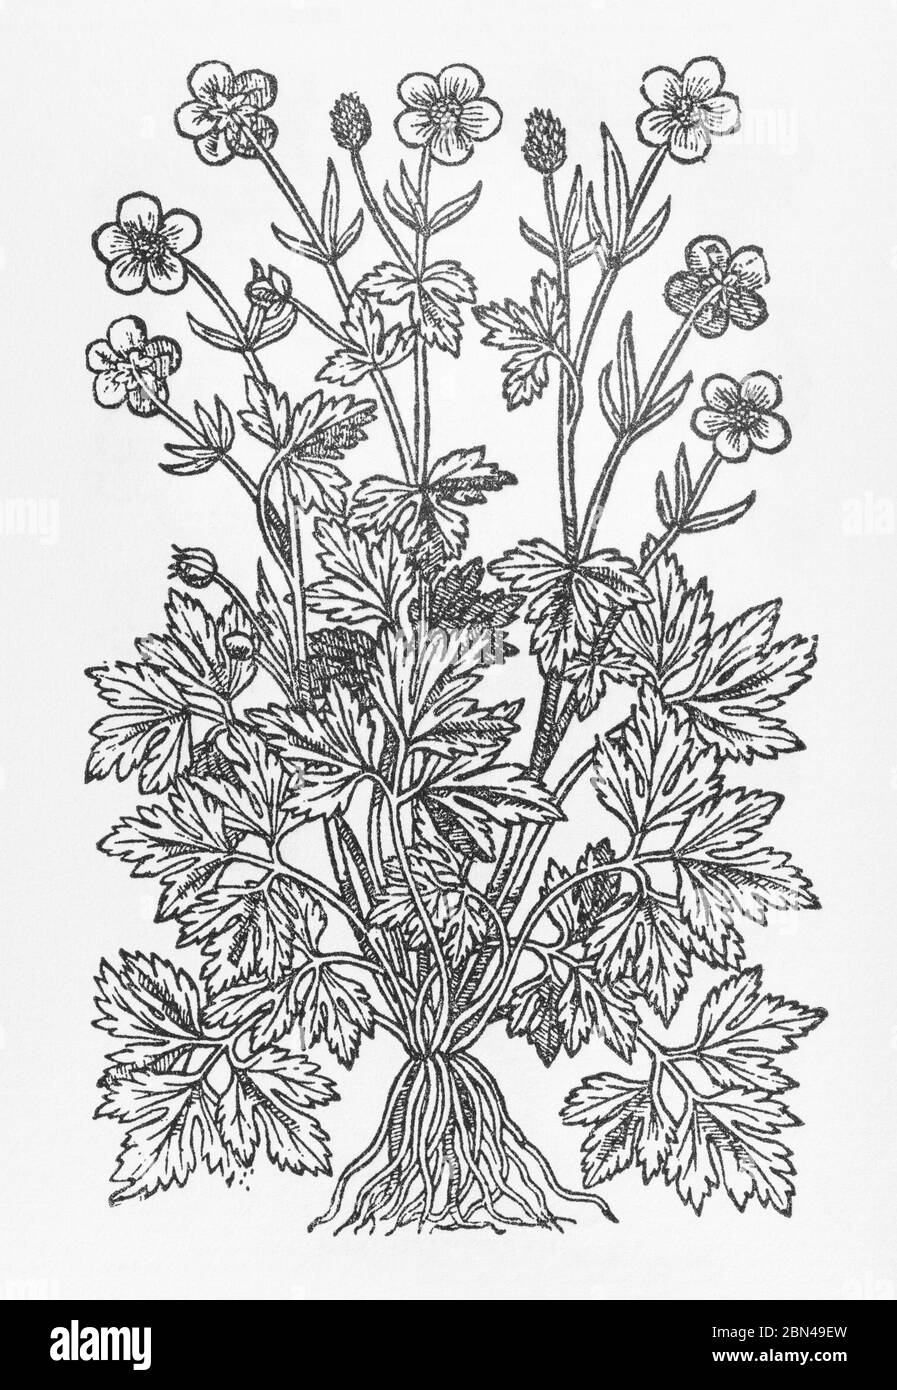 Holzschnitt eines Crowfoot (Buttercup Familie) identifiziert als Ranunculus surrectis cauliculis in Gerarde Herball, Geschichte der Pflanzen. P804. Stockfoto